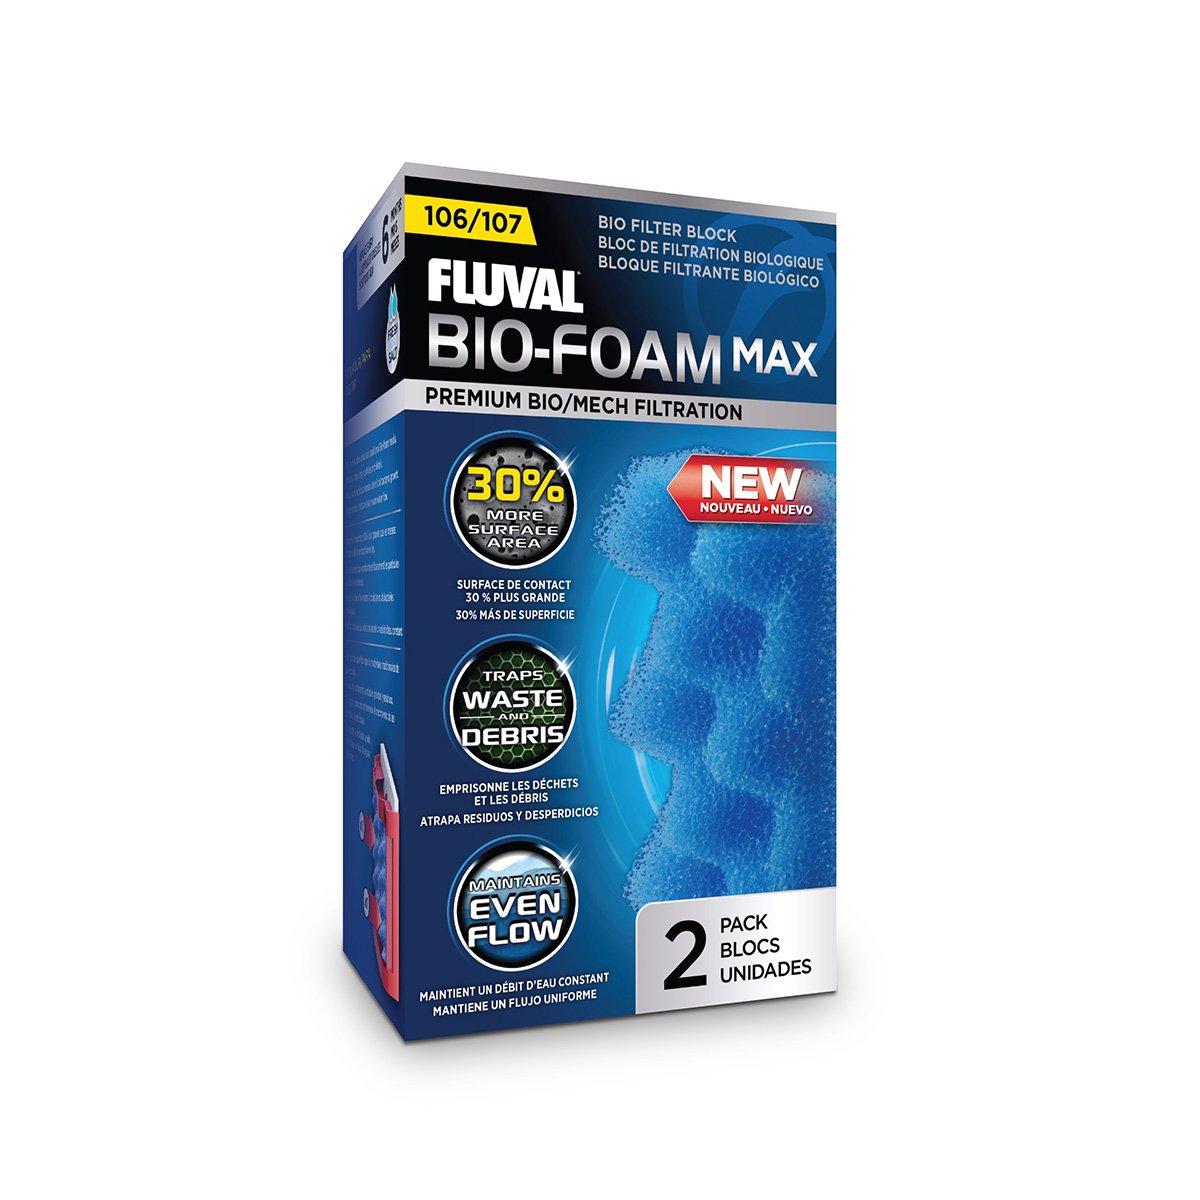 Fluval Filtersatzfilter für 107 Bio Foam MAX von Fluval